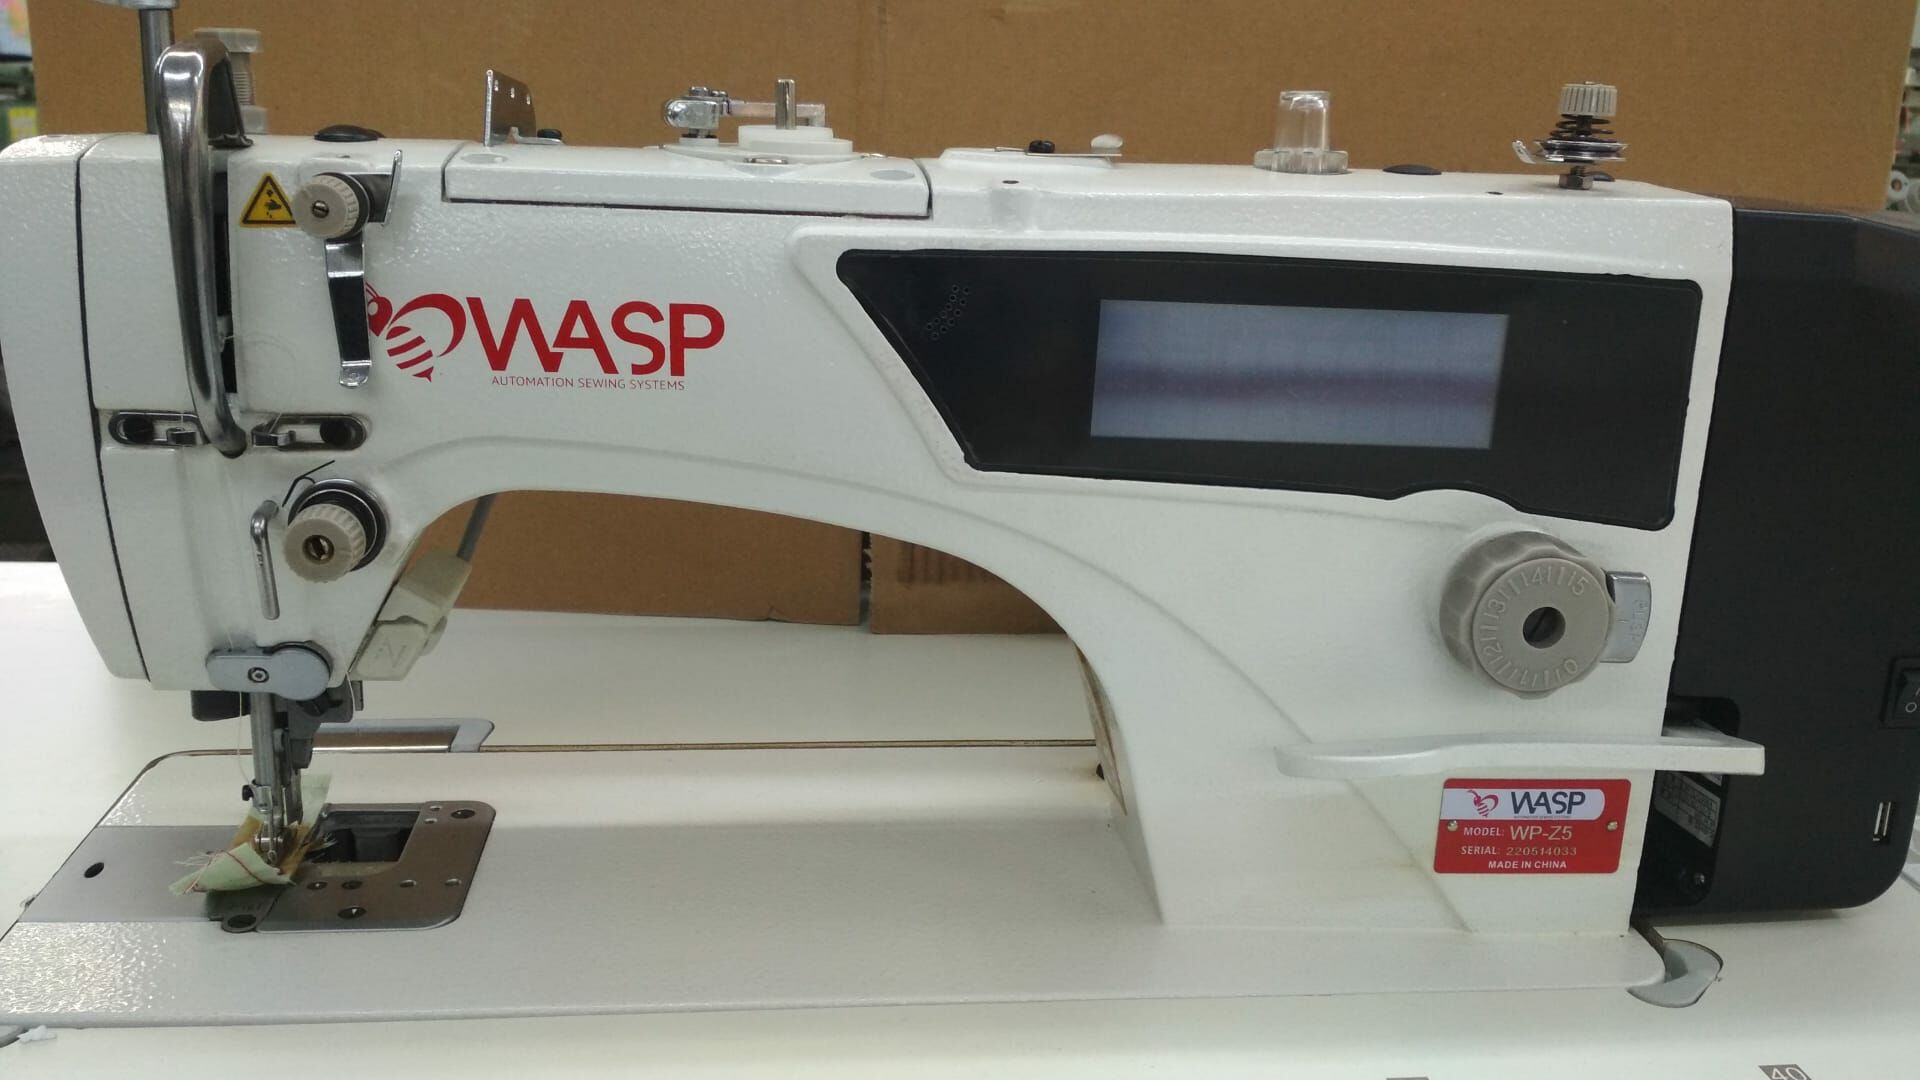 Wasp WP-Z5 Kenar Bıçaklı İplik Kesicili Gövdeden Panelli Düz Dikiş Makinası